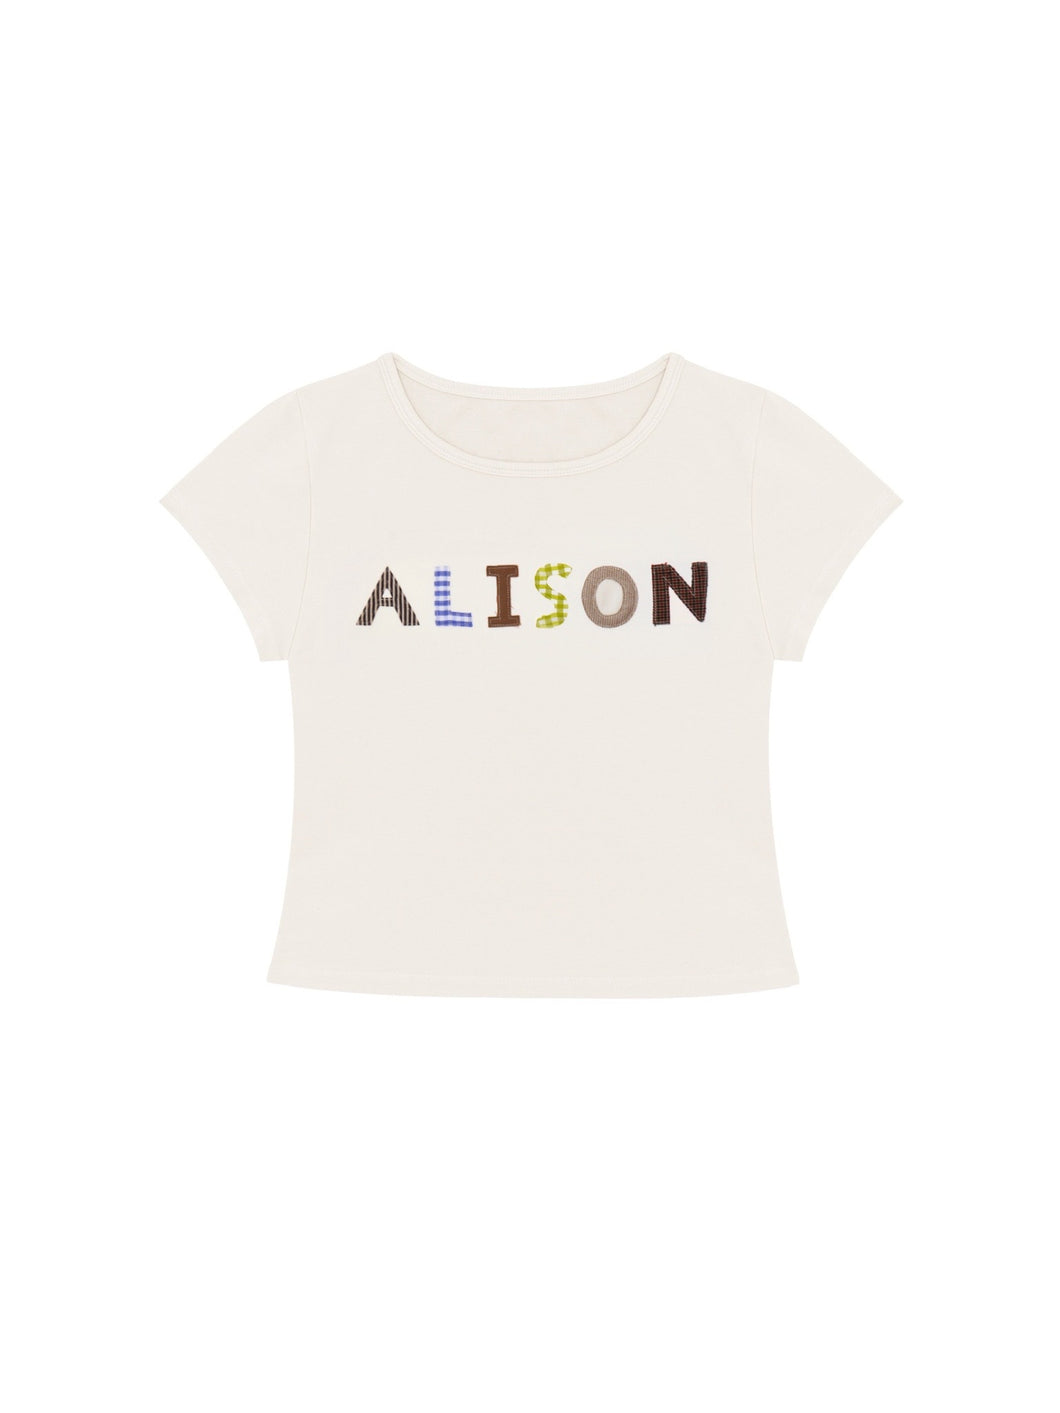 ALISON Baby Tee